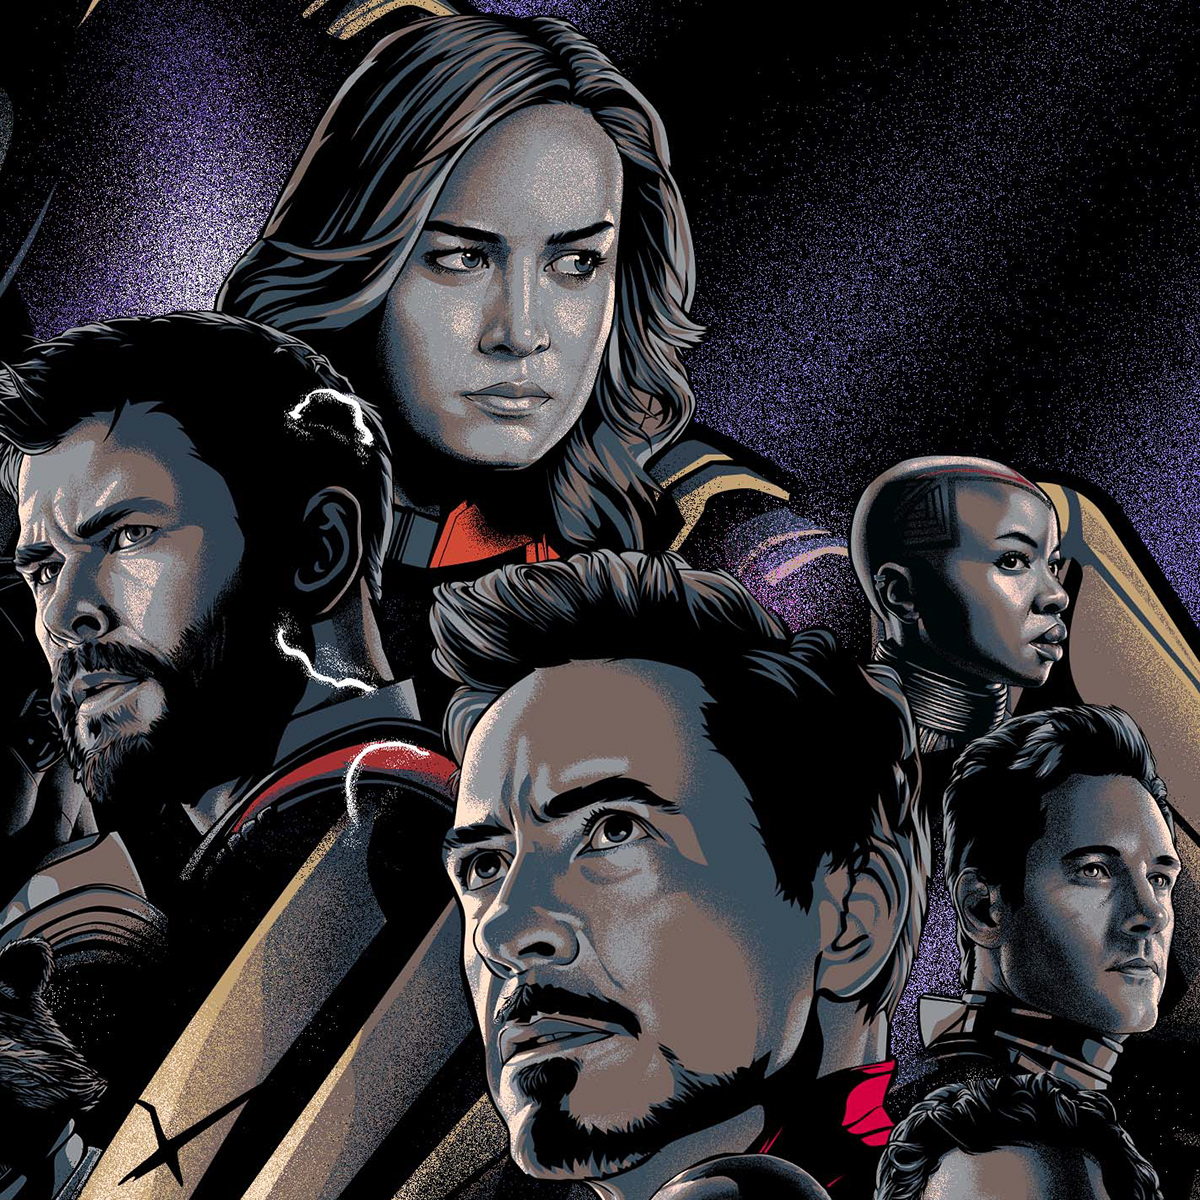 Avengers Avengers Endgame movie poster movie Marvel Cinematic Universe mcu alternate movie poster marvel poster ILLUSTRATION 